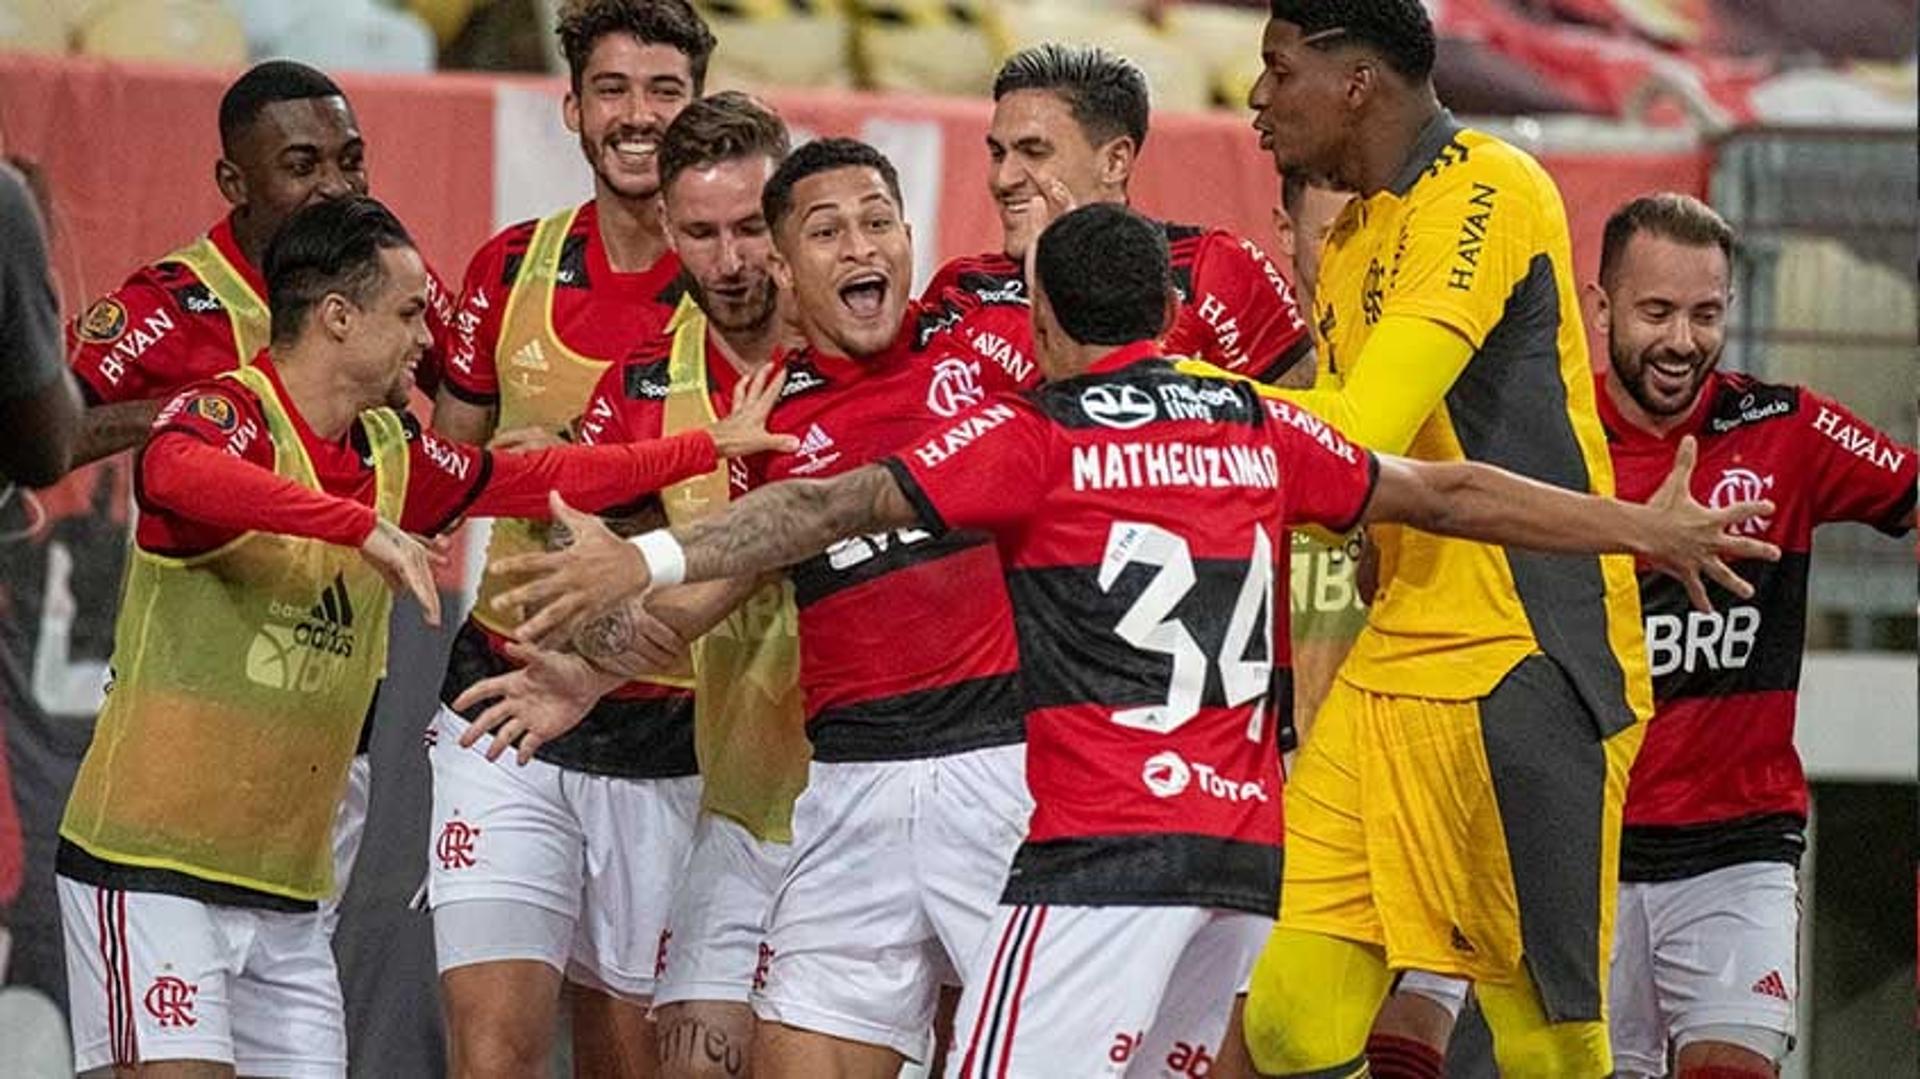 Flamengo - João Gomes